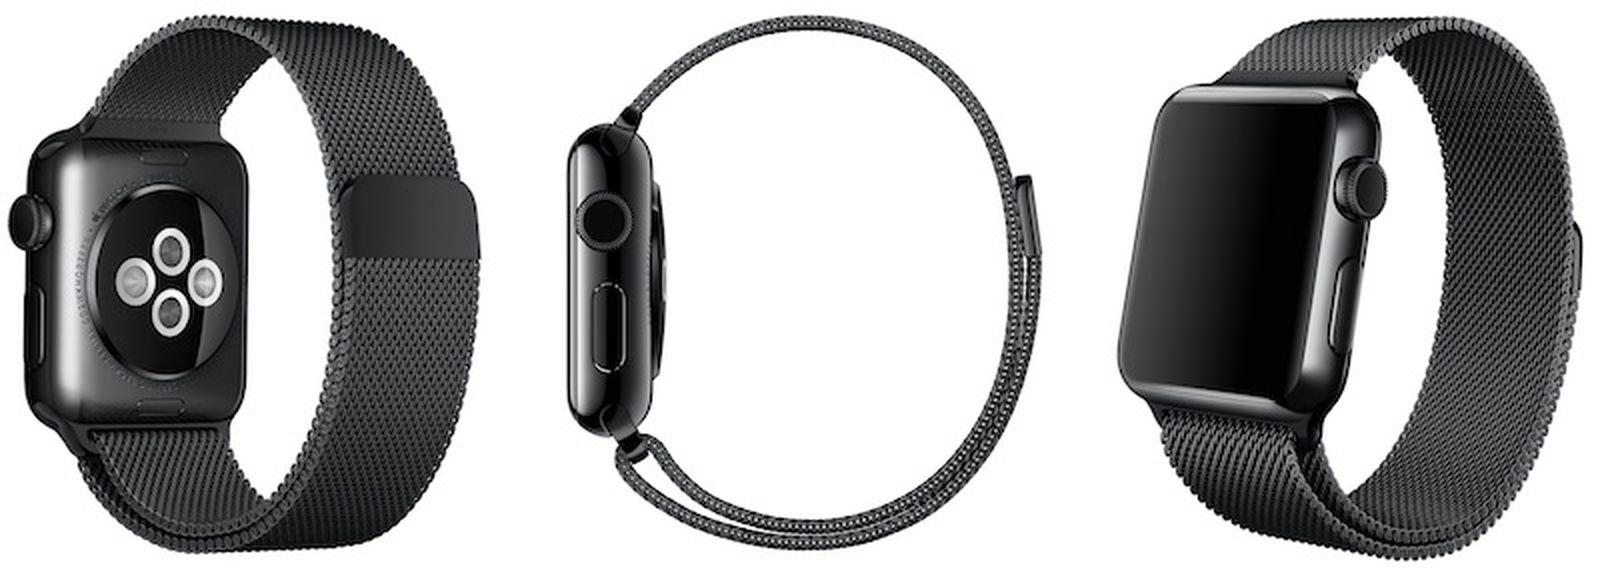 Apple Watch Space Black Milanese Loop Strap